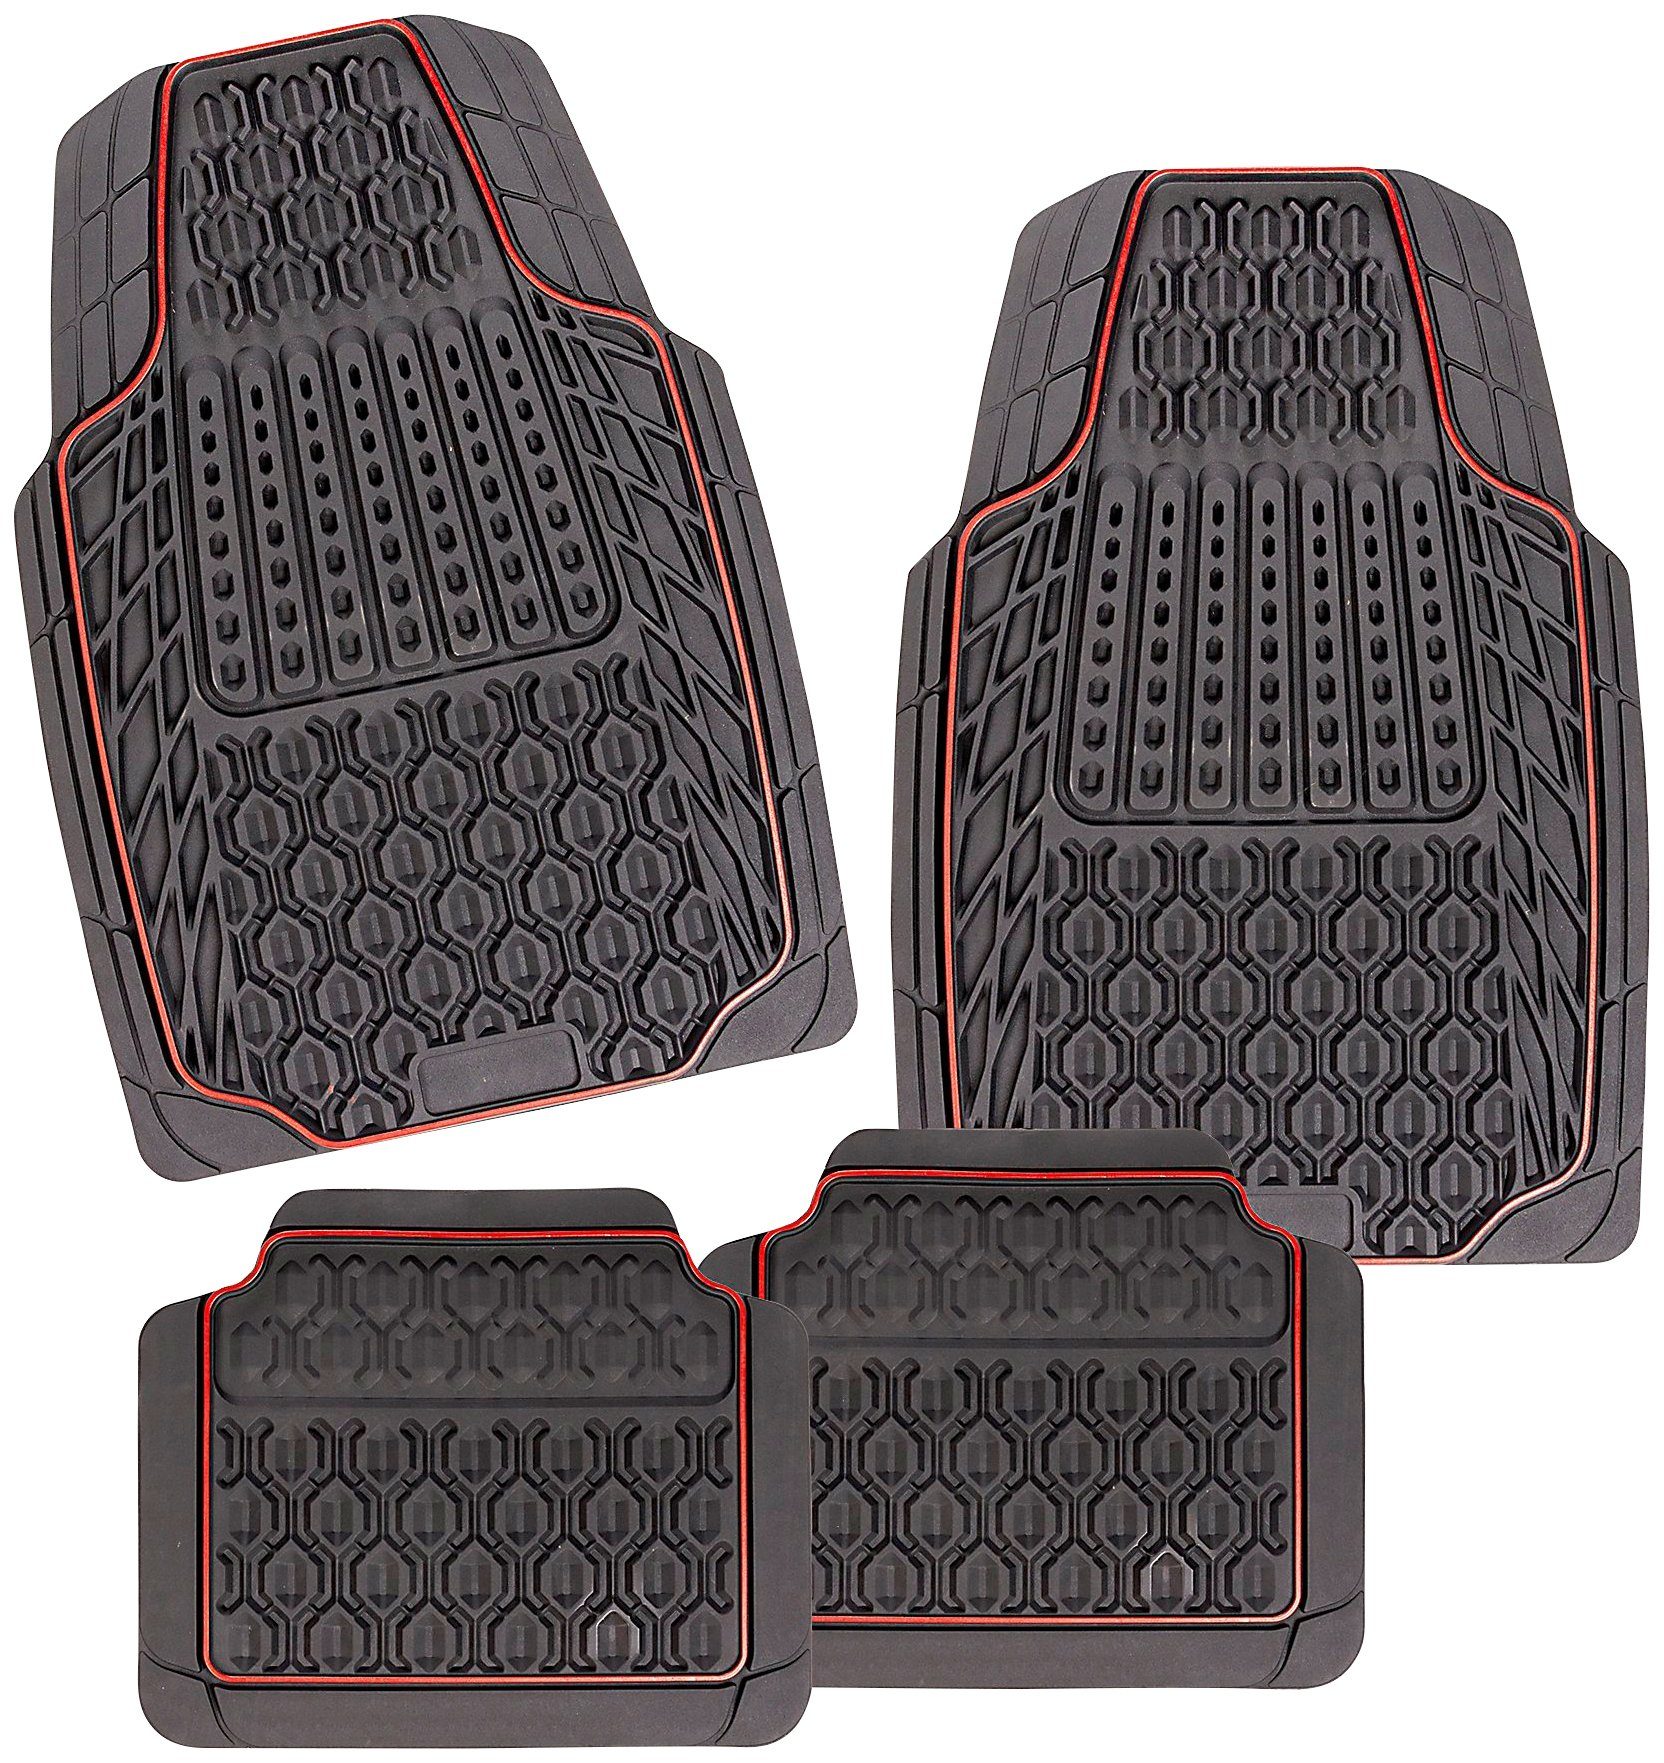 CarFashion Universal-Fußmatten Allwetter Auto-Fußmatten Set Tamburello (4 St), Kombi/PKW, universal passend, zuschneidbar, wasserabweisend, rutschsicher, robust